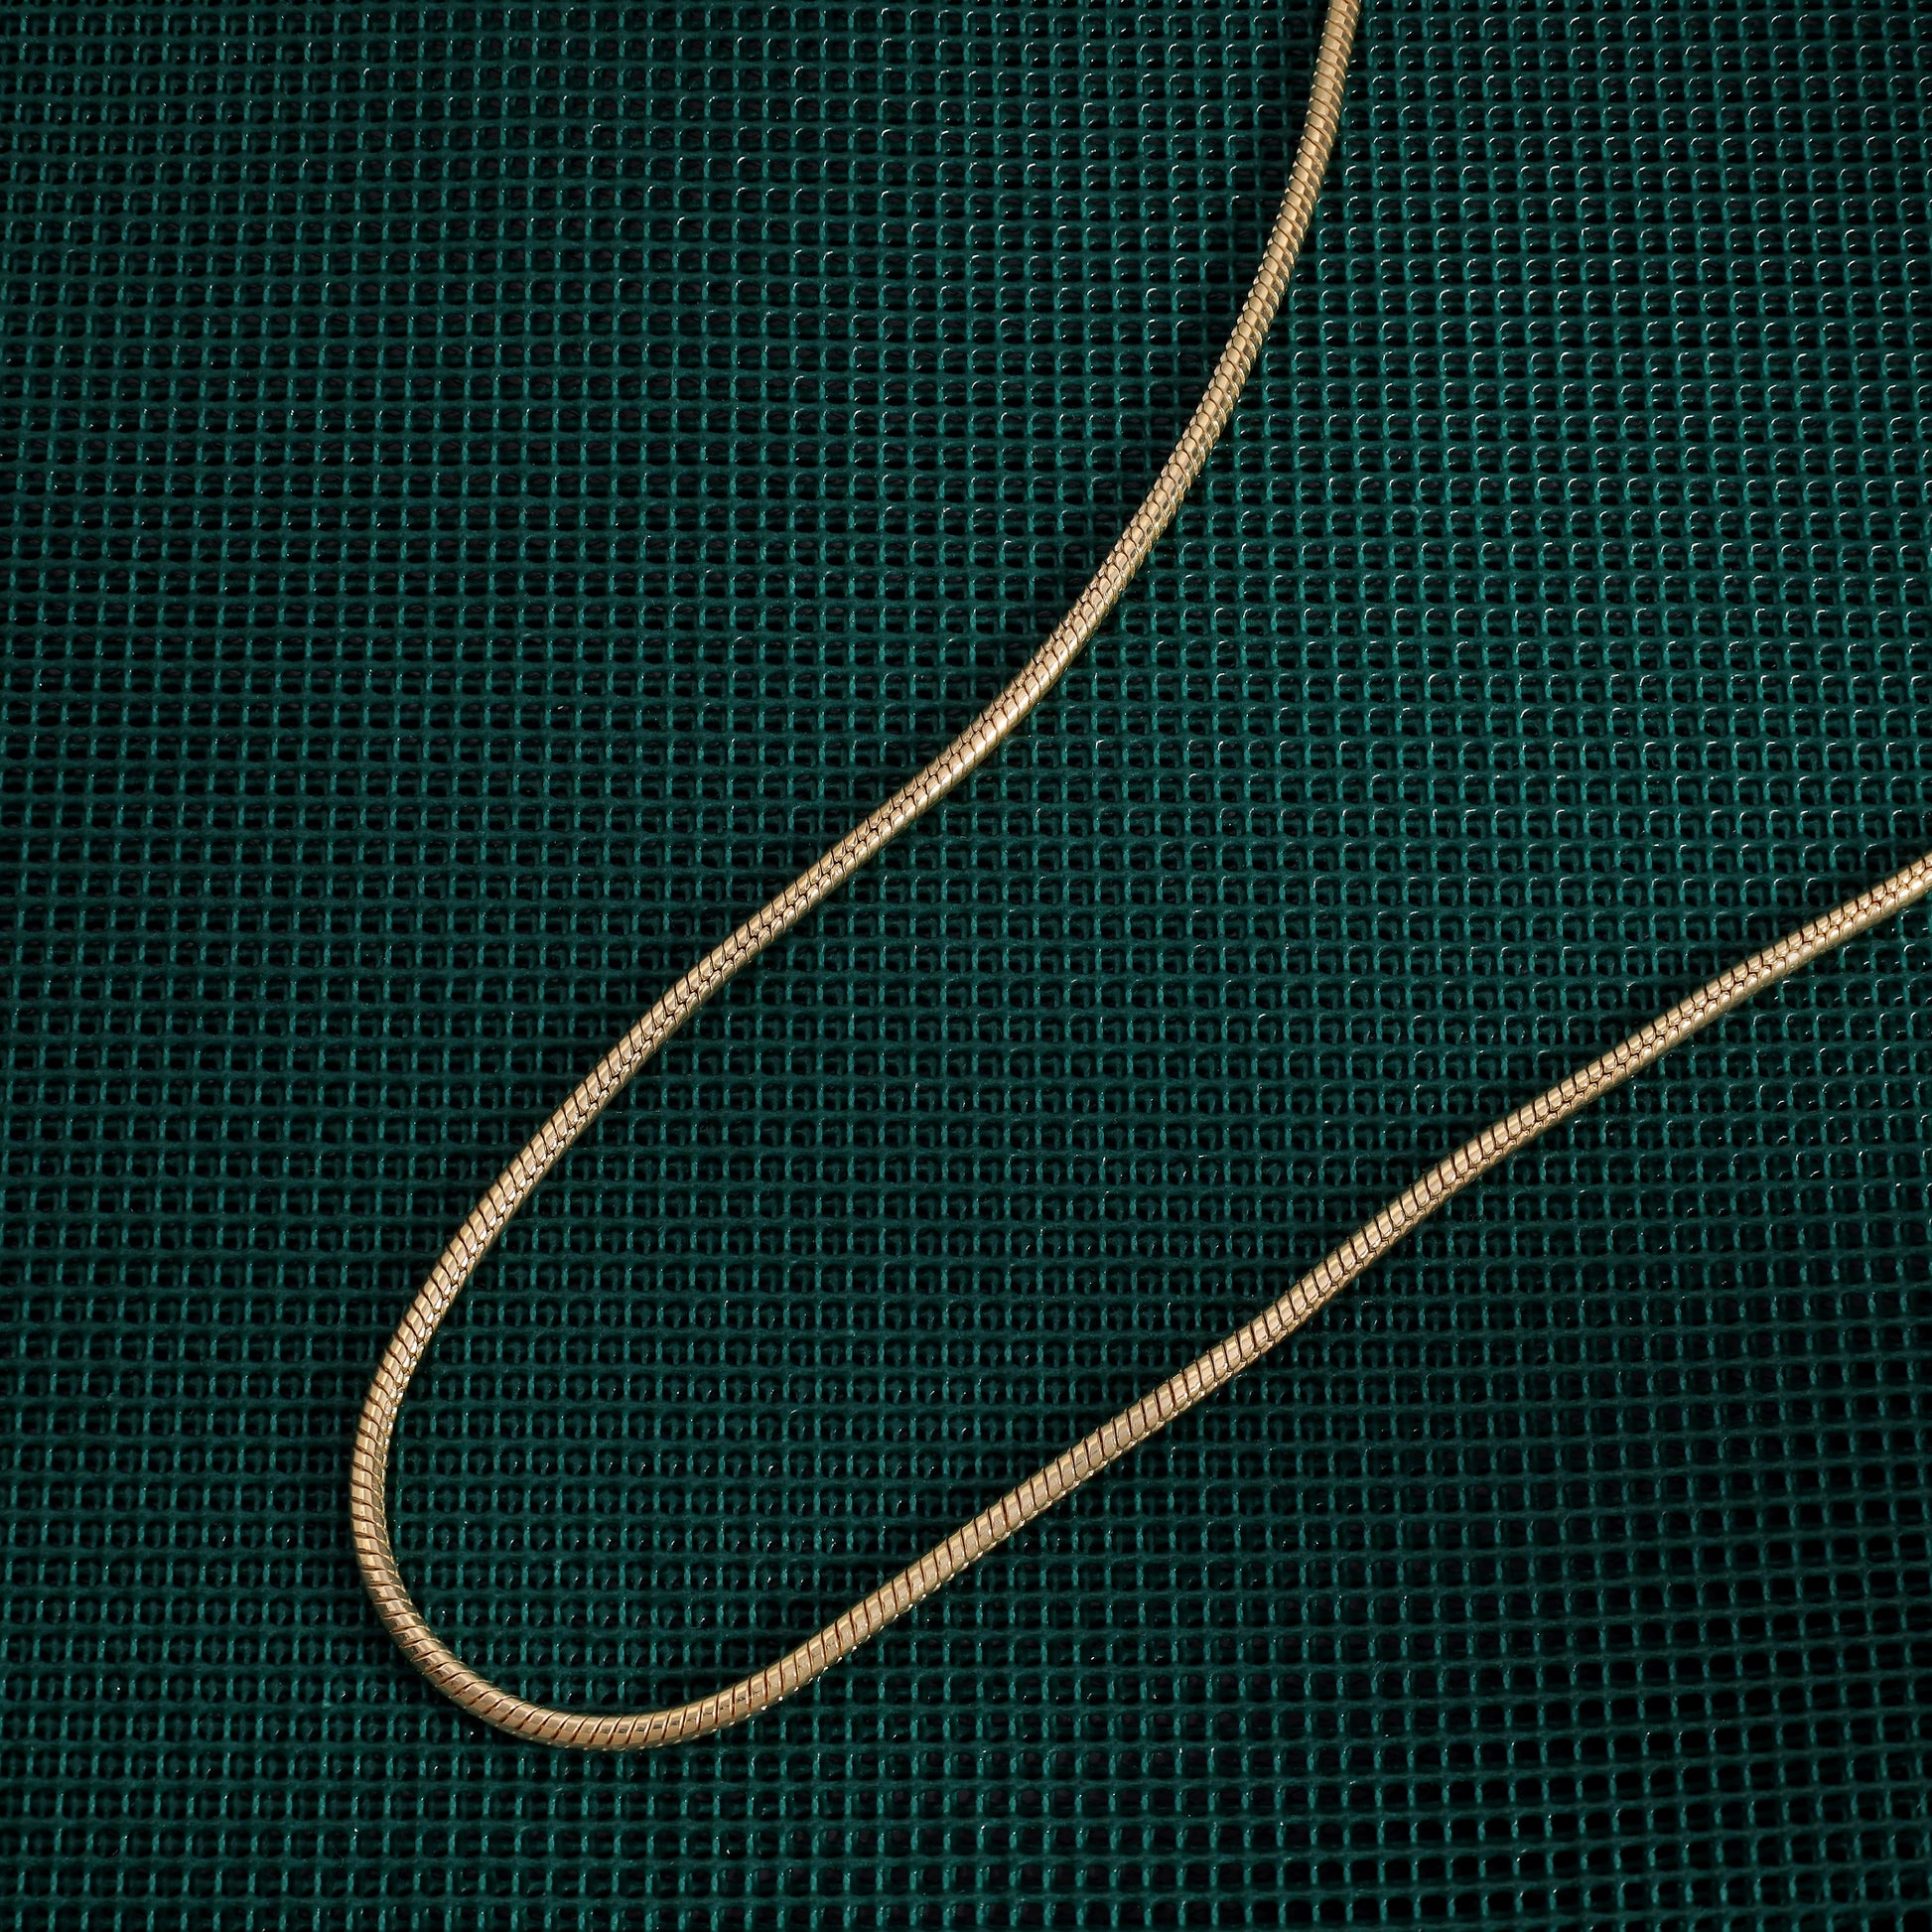 Vergoldete Snake Chain Schlangenkette 2,4mm 45cm lang 925 Sterling Silber (K809) - Taipan Schmuck